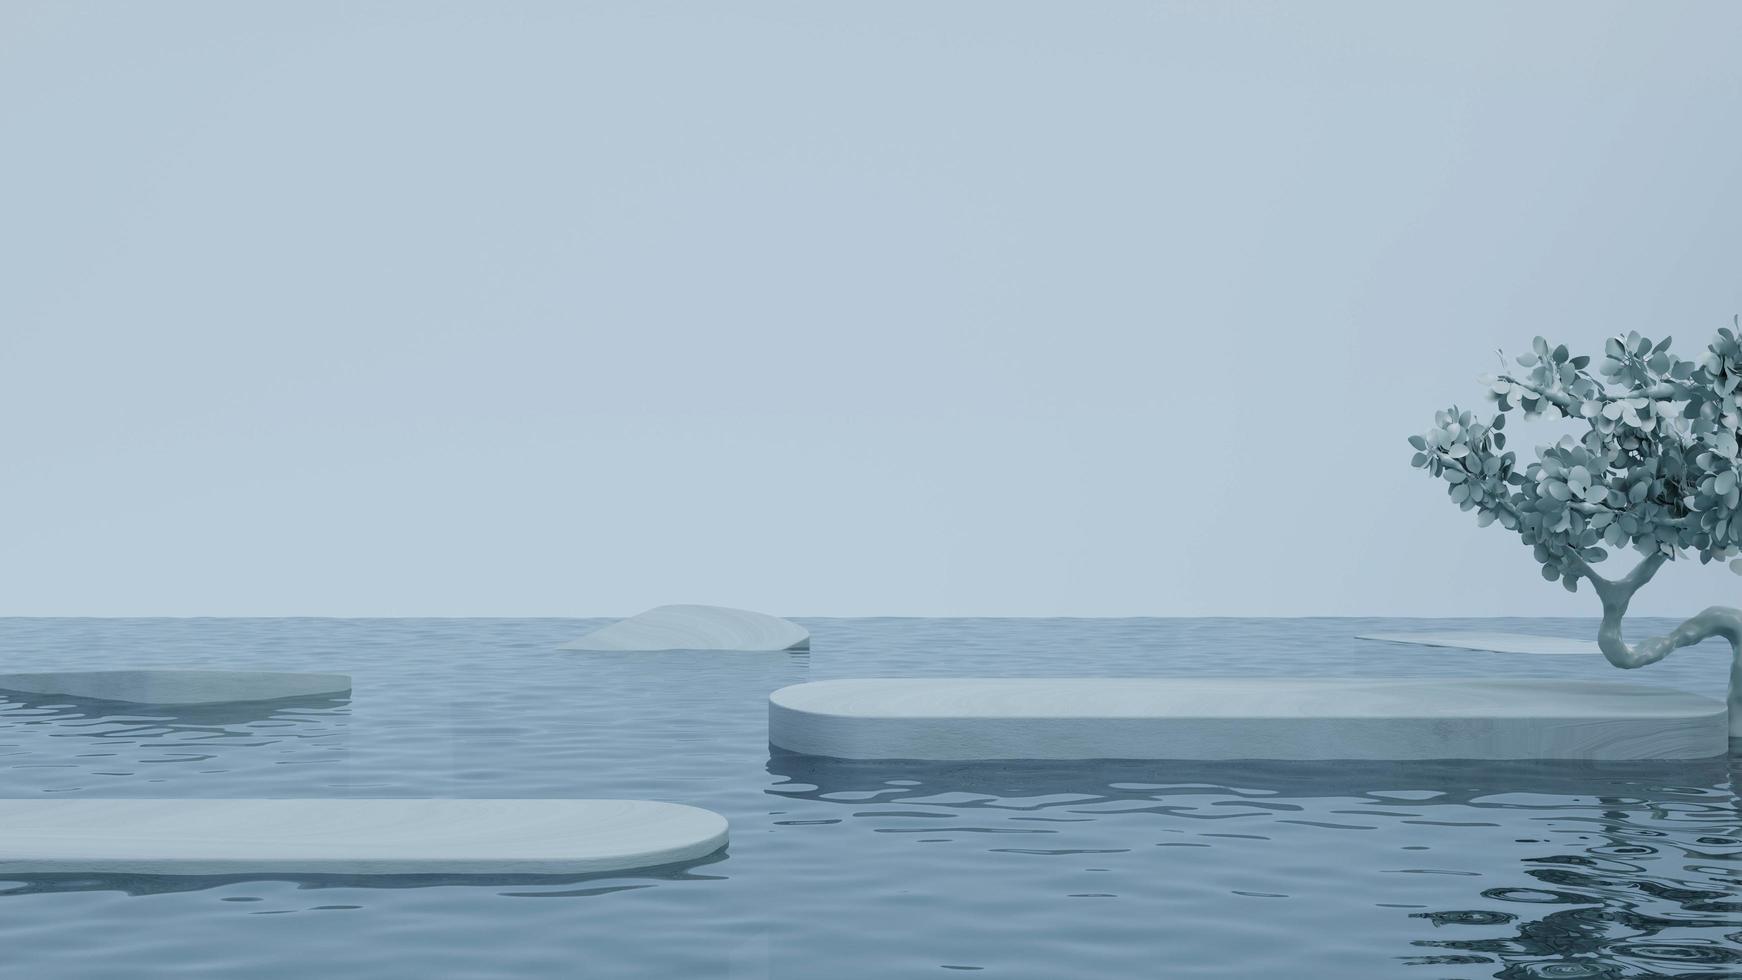 plataforma de exibição do produto flutuando na ilustração de renderização 3d da superfície da água foto